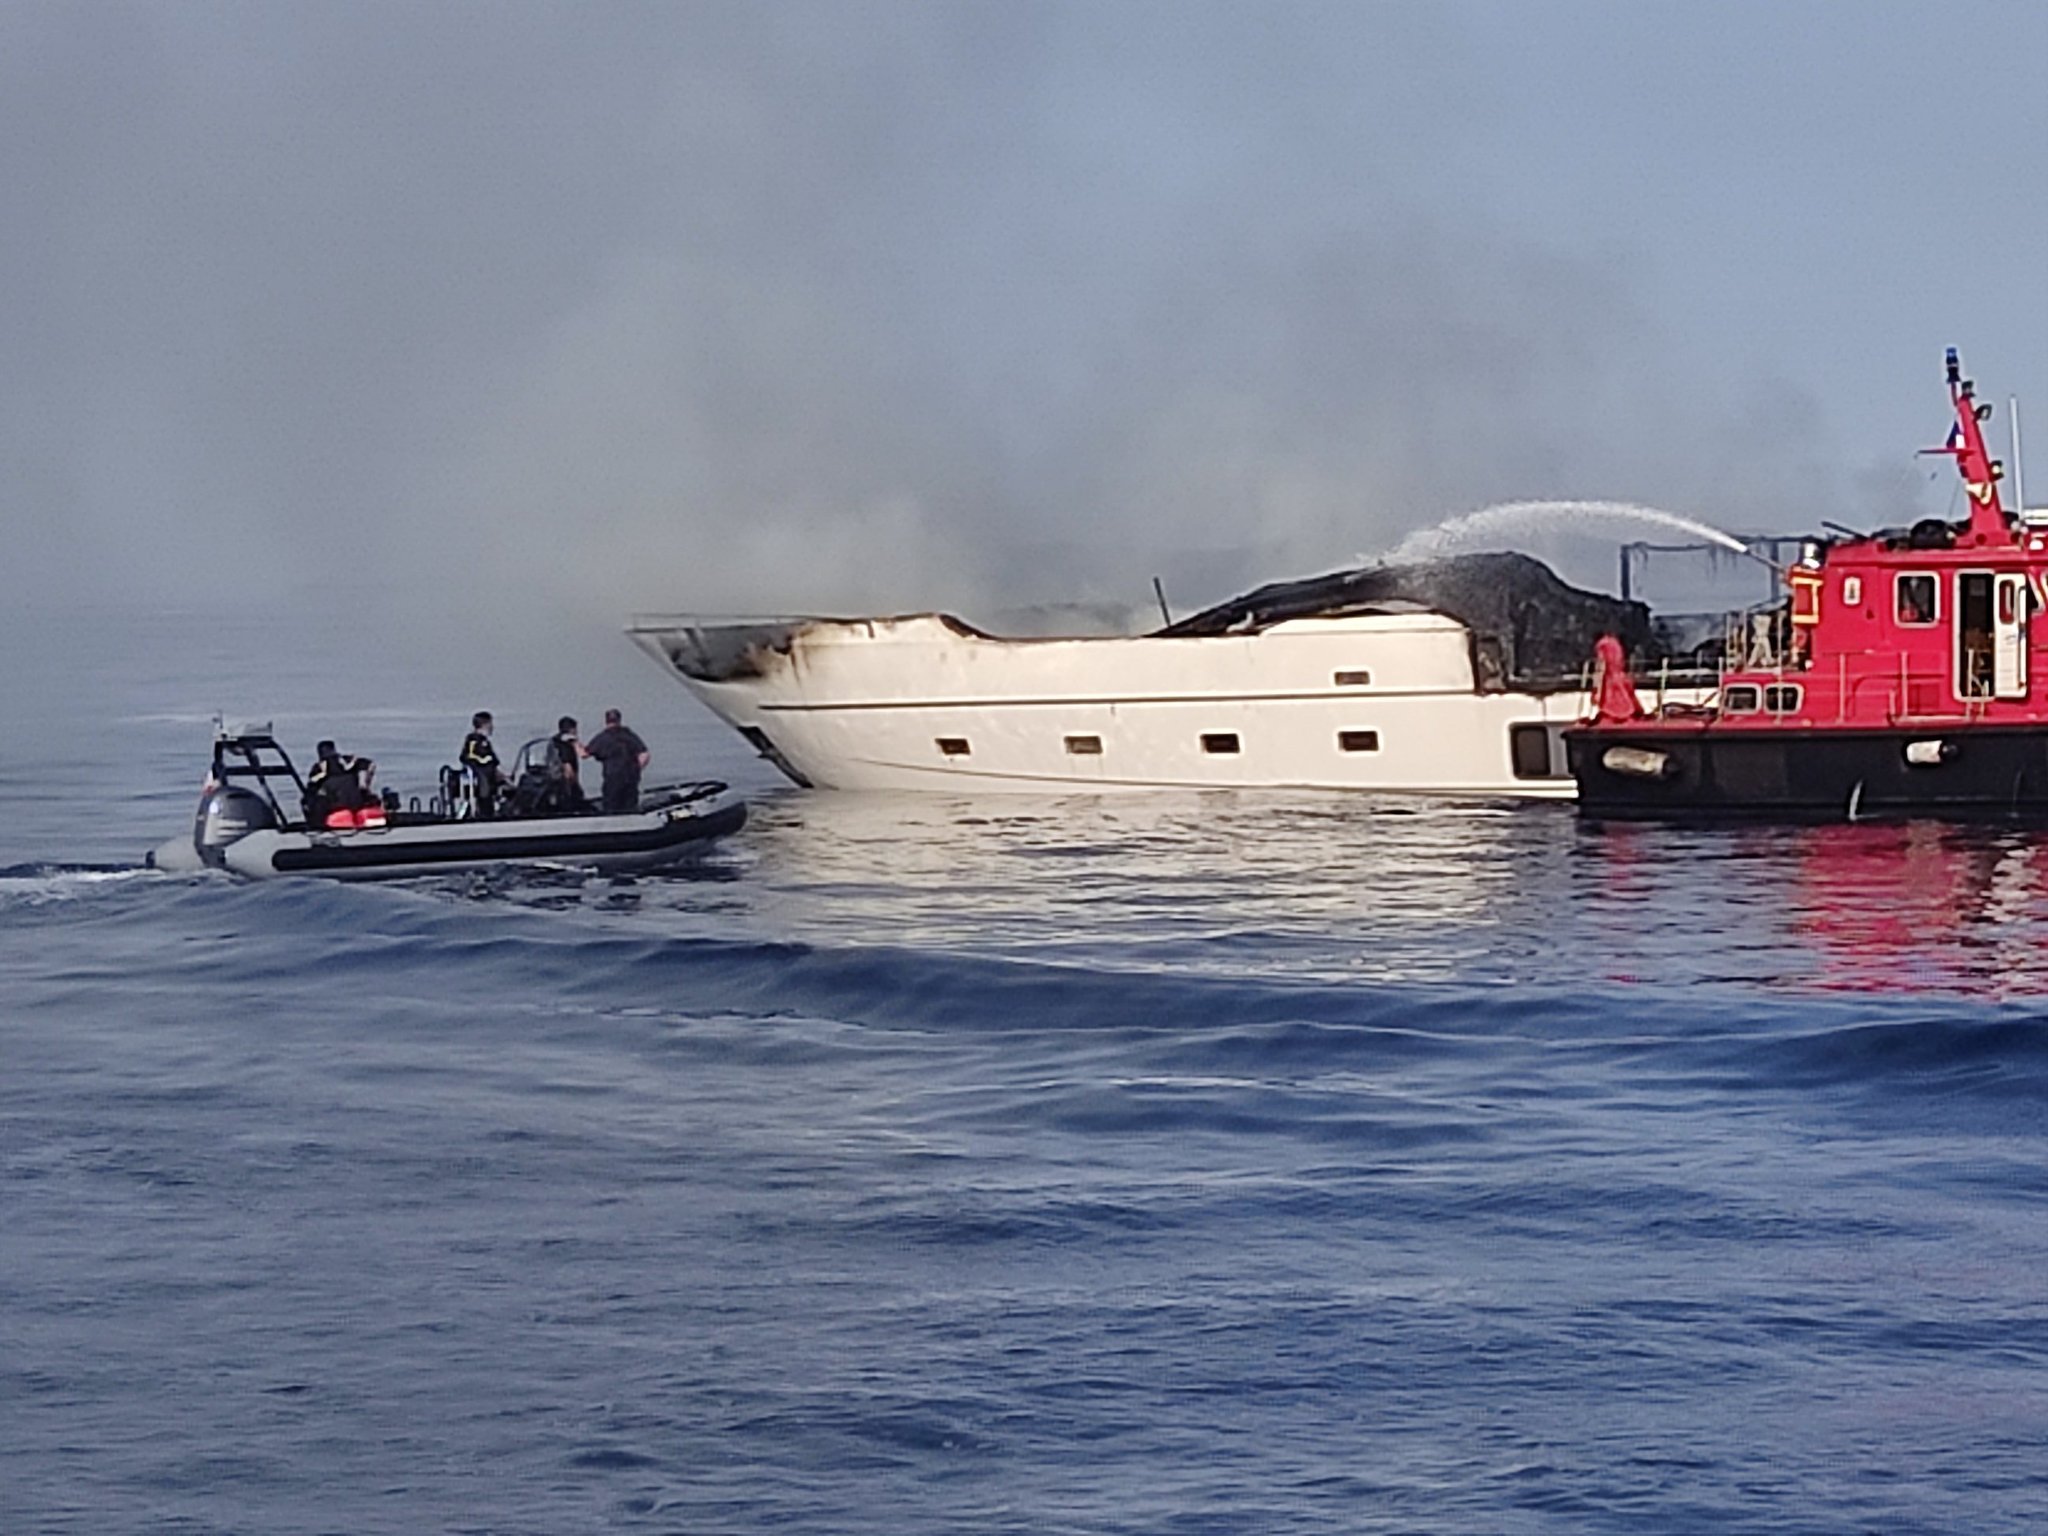 taucher yacht brennt